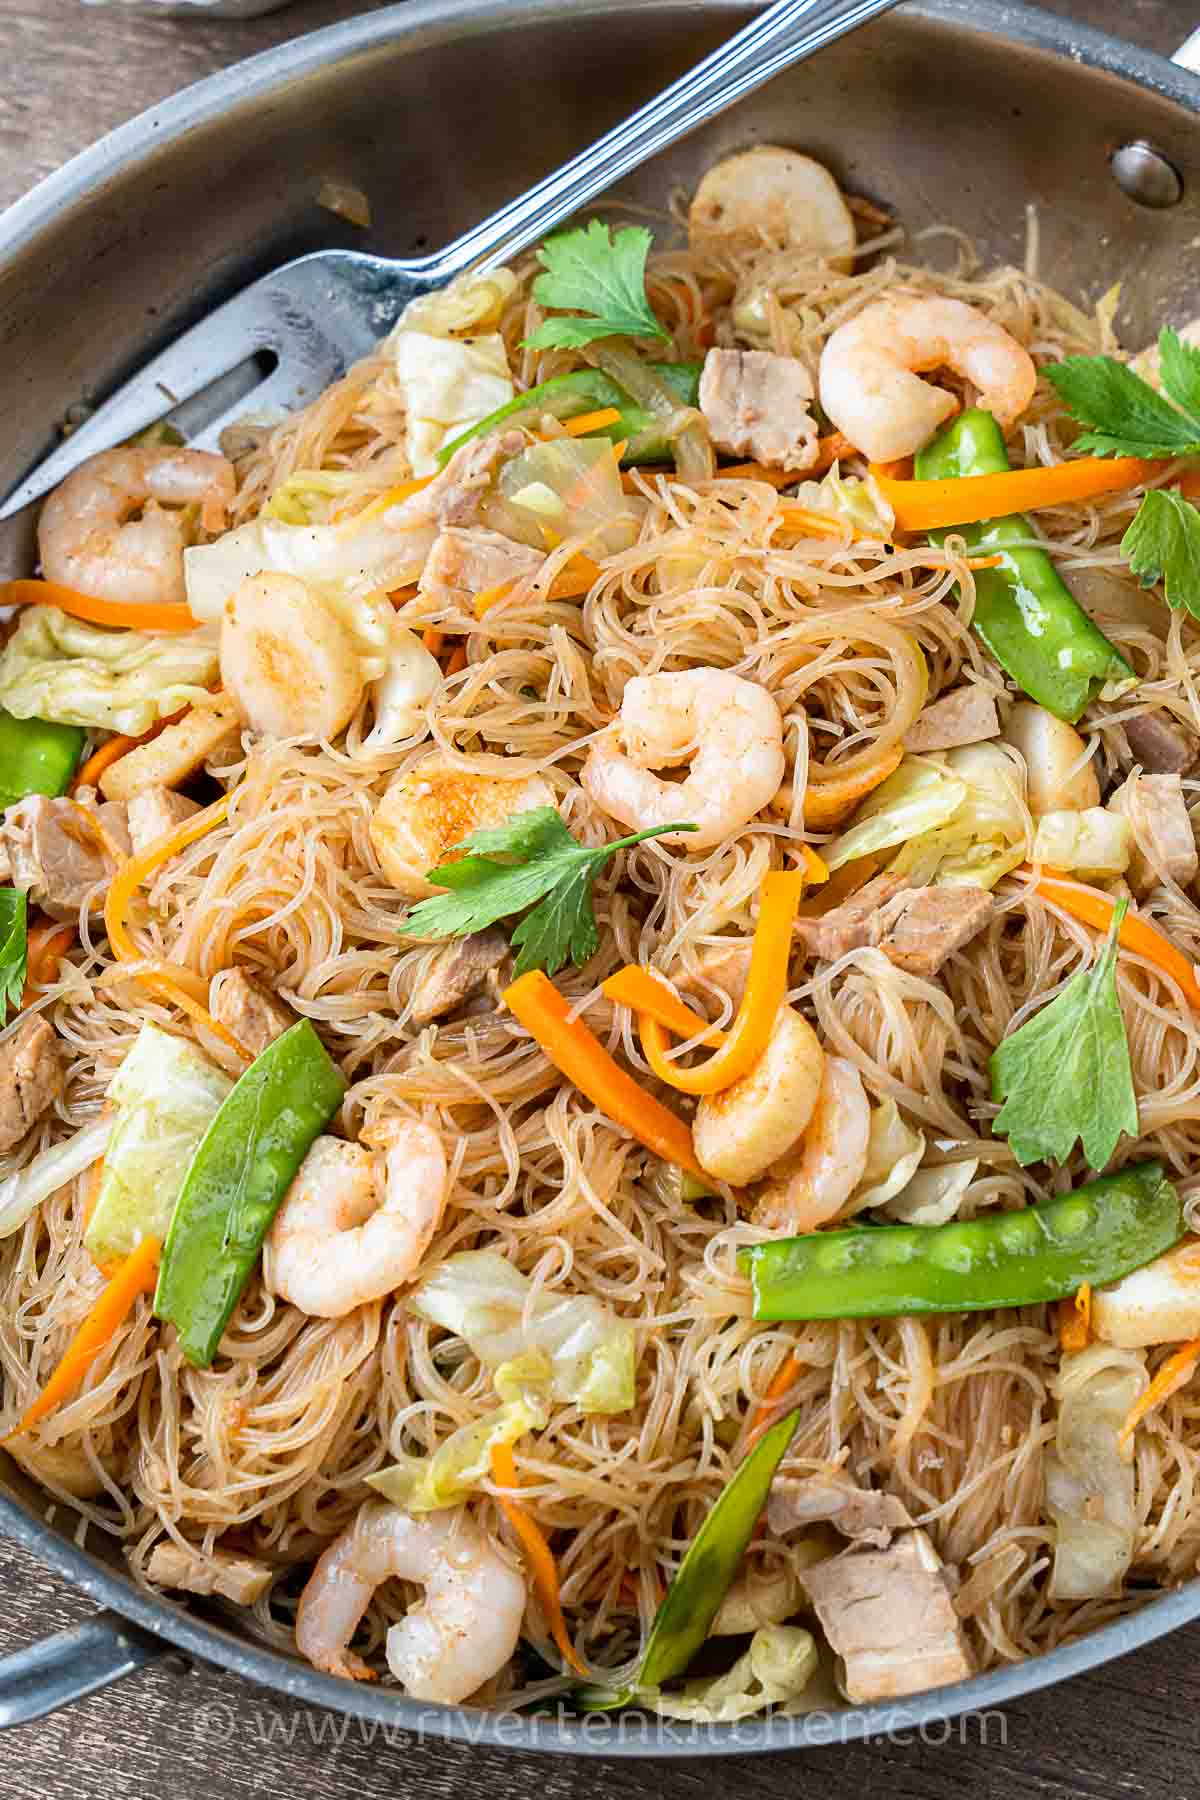 Stir-fried rice noodles with pork, shrimp and vegetables.